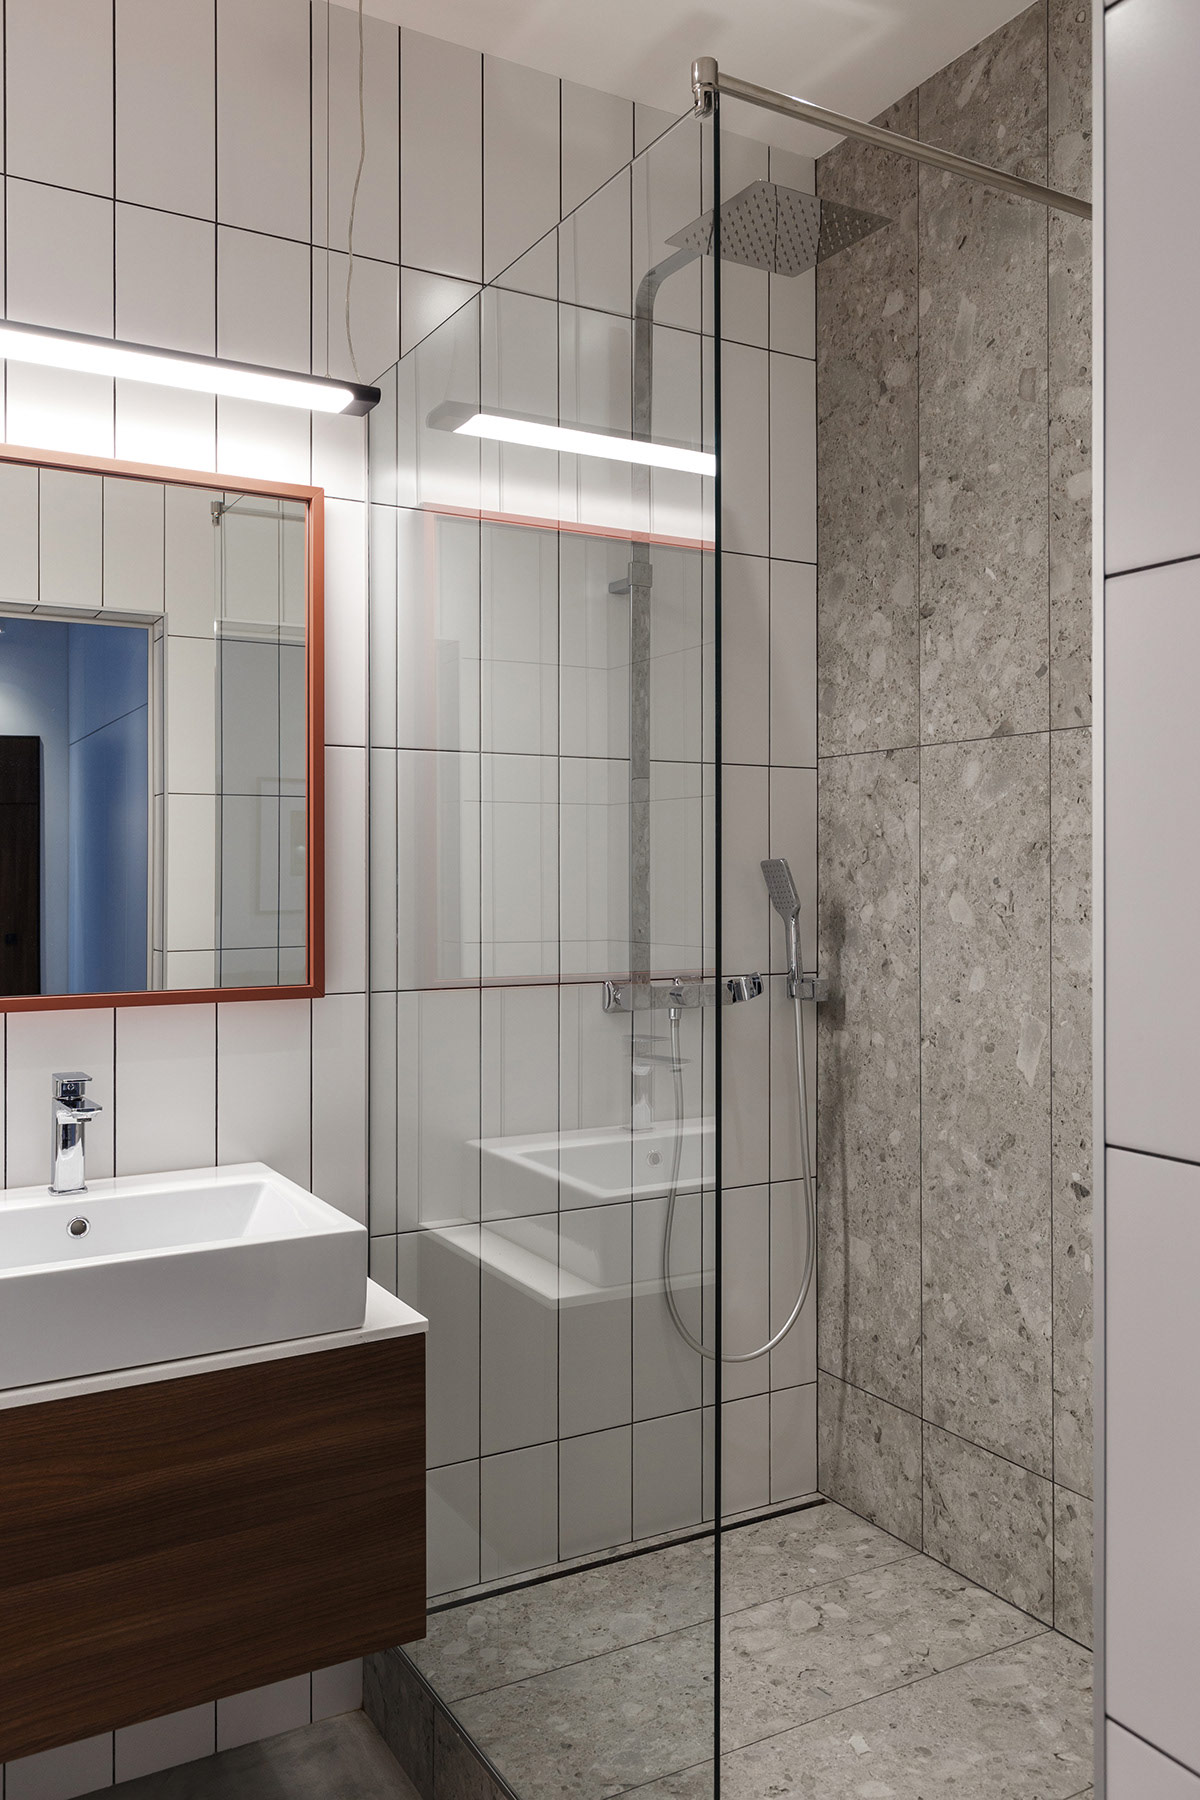 Hình ảnh phòng tắm với tường ốp gạch men màu trắng, xám sạch sẽ, vách kính trong suốt, gương lớn treo tường